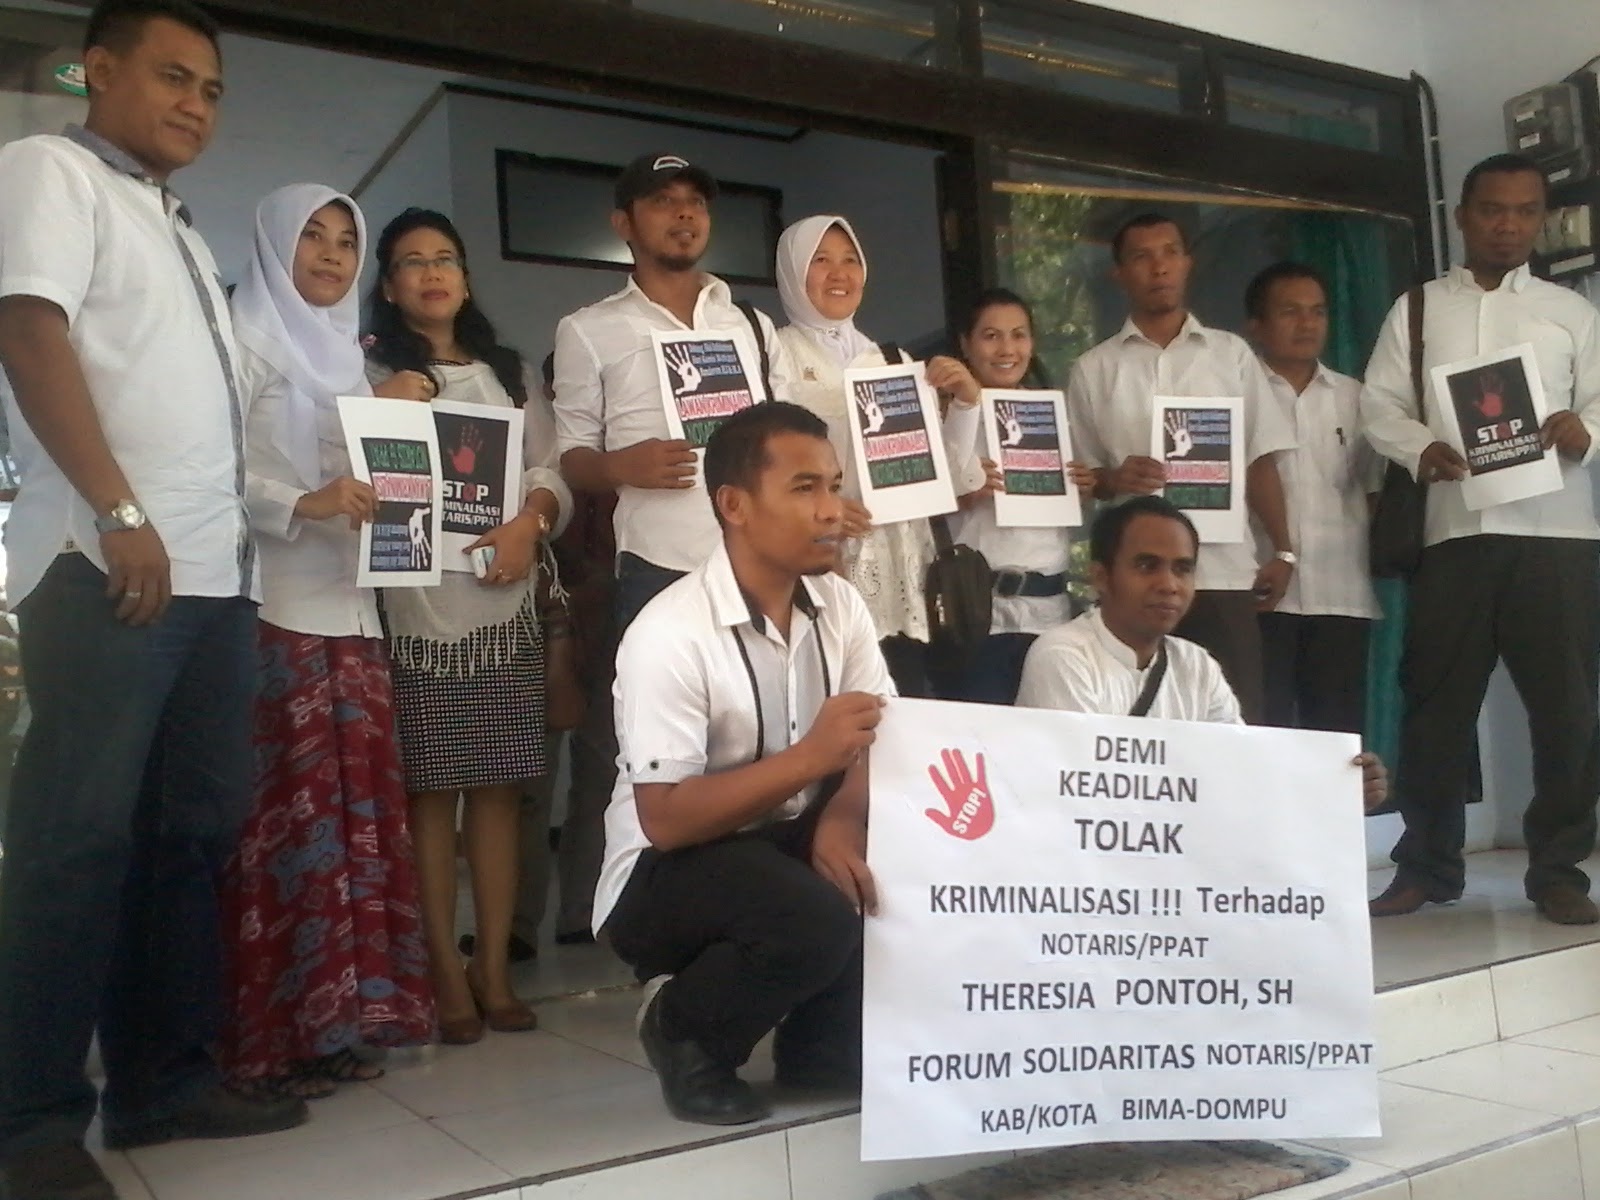 Rekan Dikriminalisasi, Forum Notaris Bima-Dompu Gelar Aksi Solidaritas 